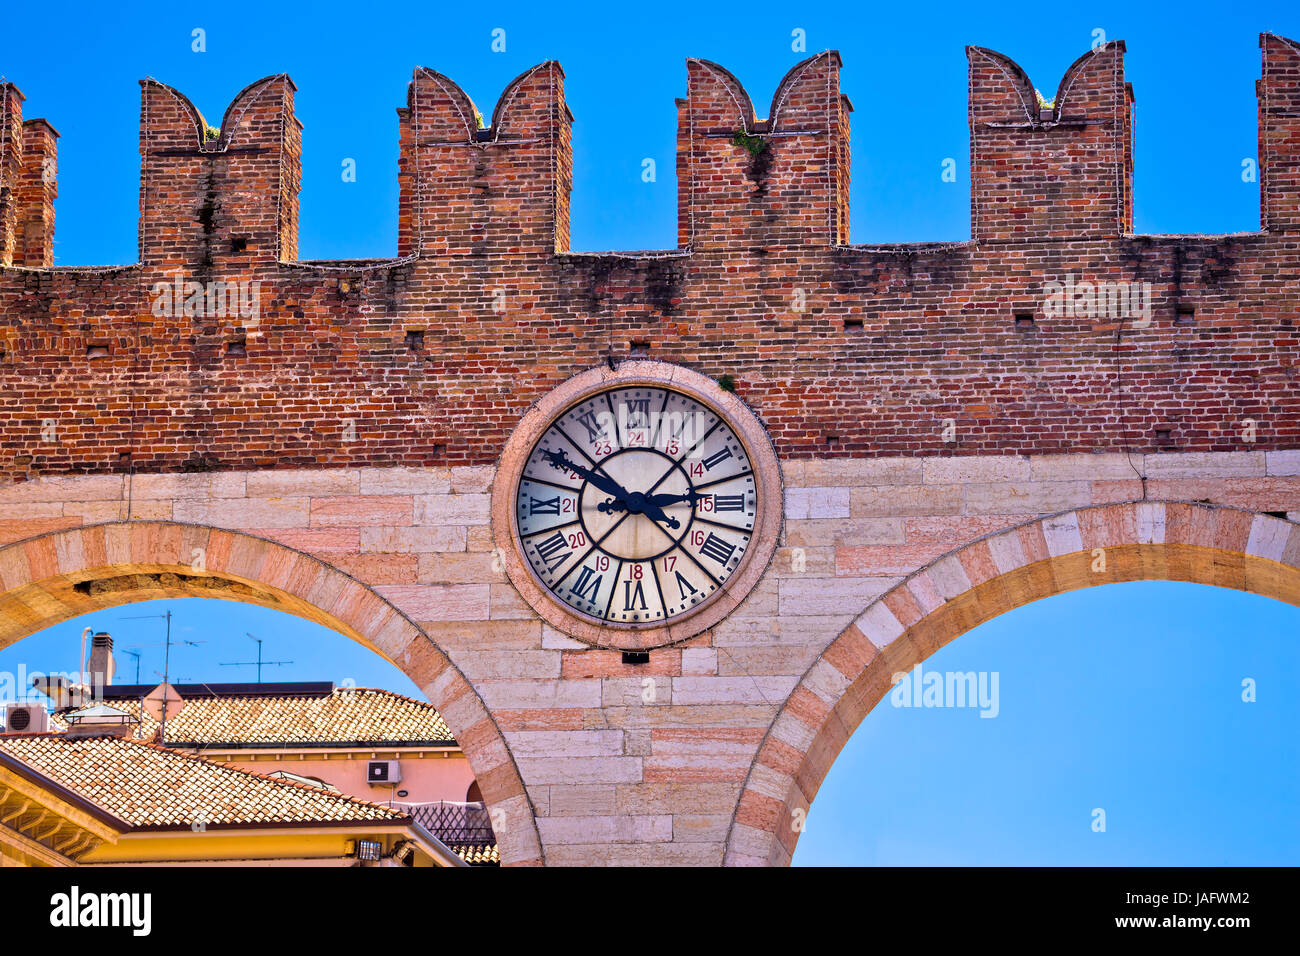 Les murs de la ville de Vérone vue détaillée, monument en destination touristique en Vénétie (Italie) Banque D'Images